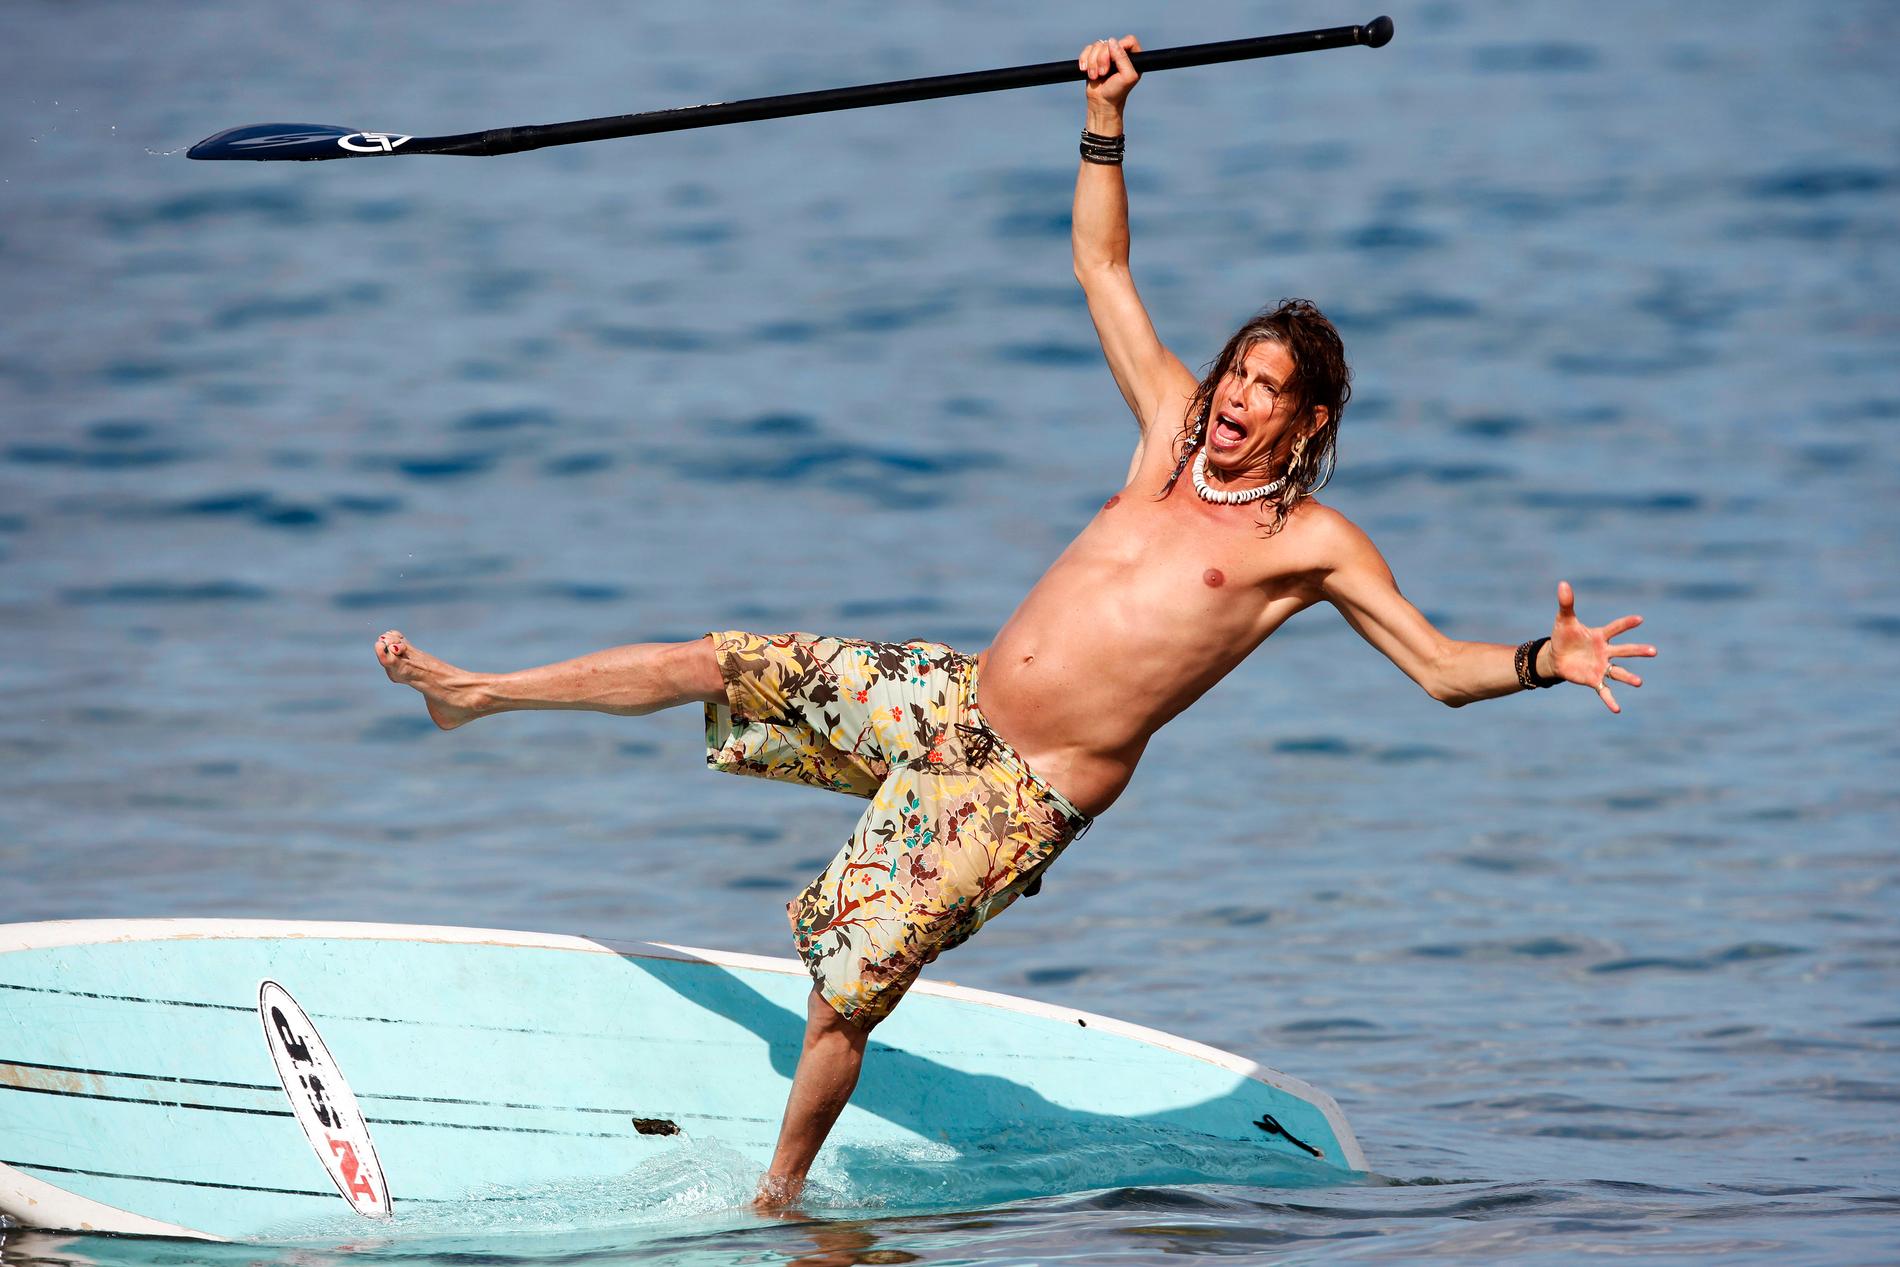 ”No hands, no hands!”. Balansen såg ut att svika Aerosmith-legendaren Steven Tyler, 63, när han paddlade surfbräda under veckans romantiska Hawaii-resa med flickvänen Erin Brady. Men det är varken rockrävens trademarkade avgrundsgap eller begynnande magplask som är det sensationella i den här bilden. Kolla i stället in killens pektå! På väg att helt övermanövrera sin dubbelt så stora jämlike. Livin' on the EDGE!